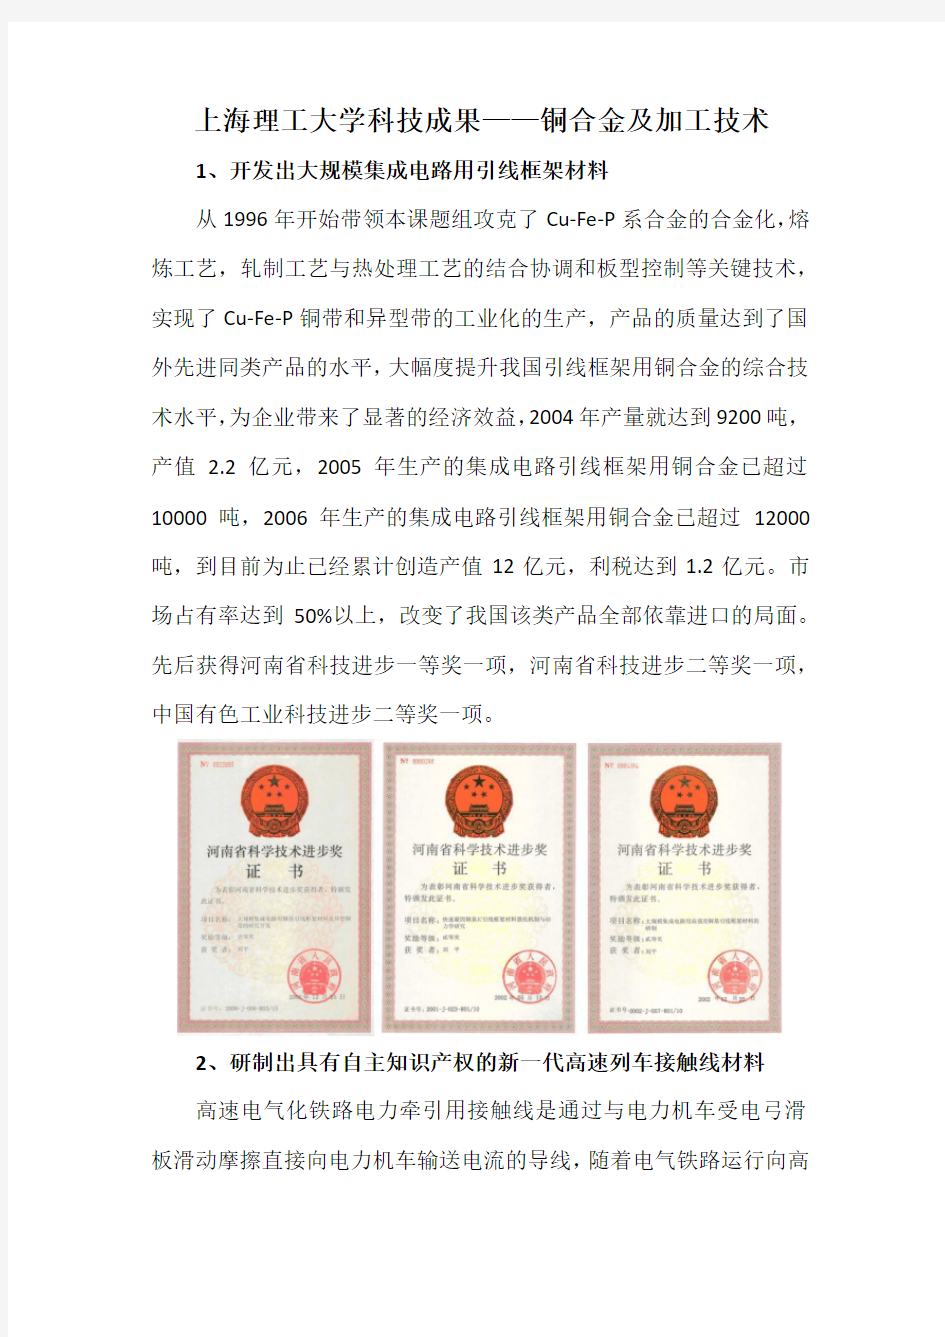 上海理工大学科技成果——铜合金及加工技术